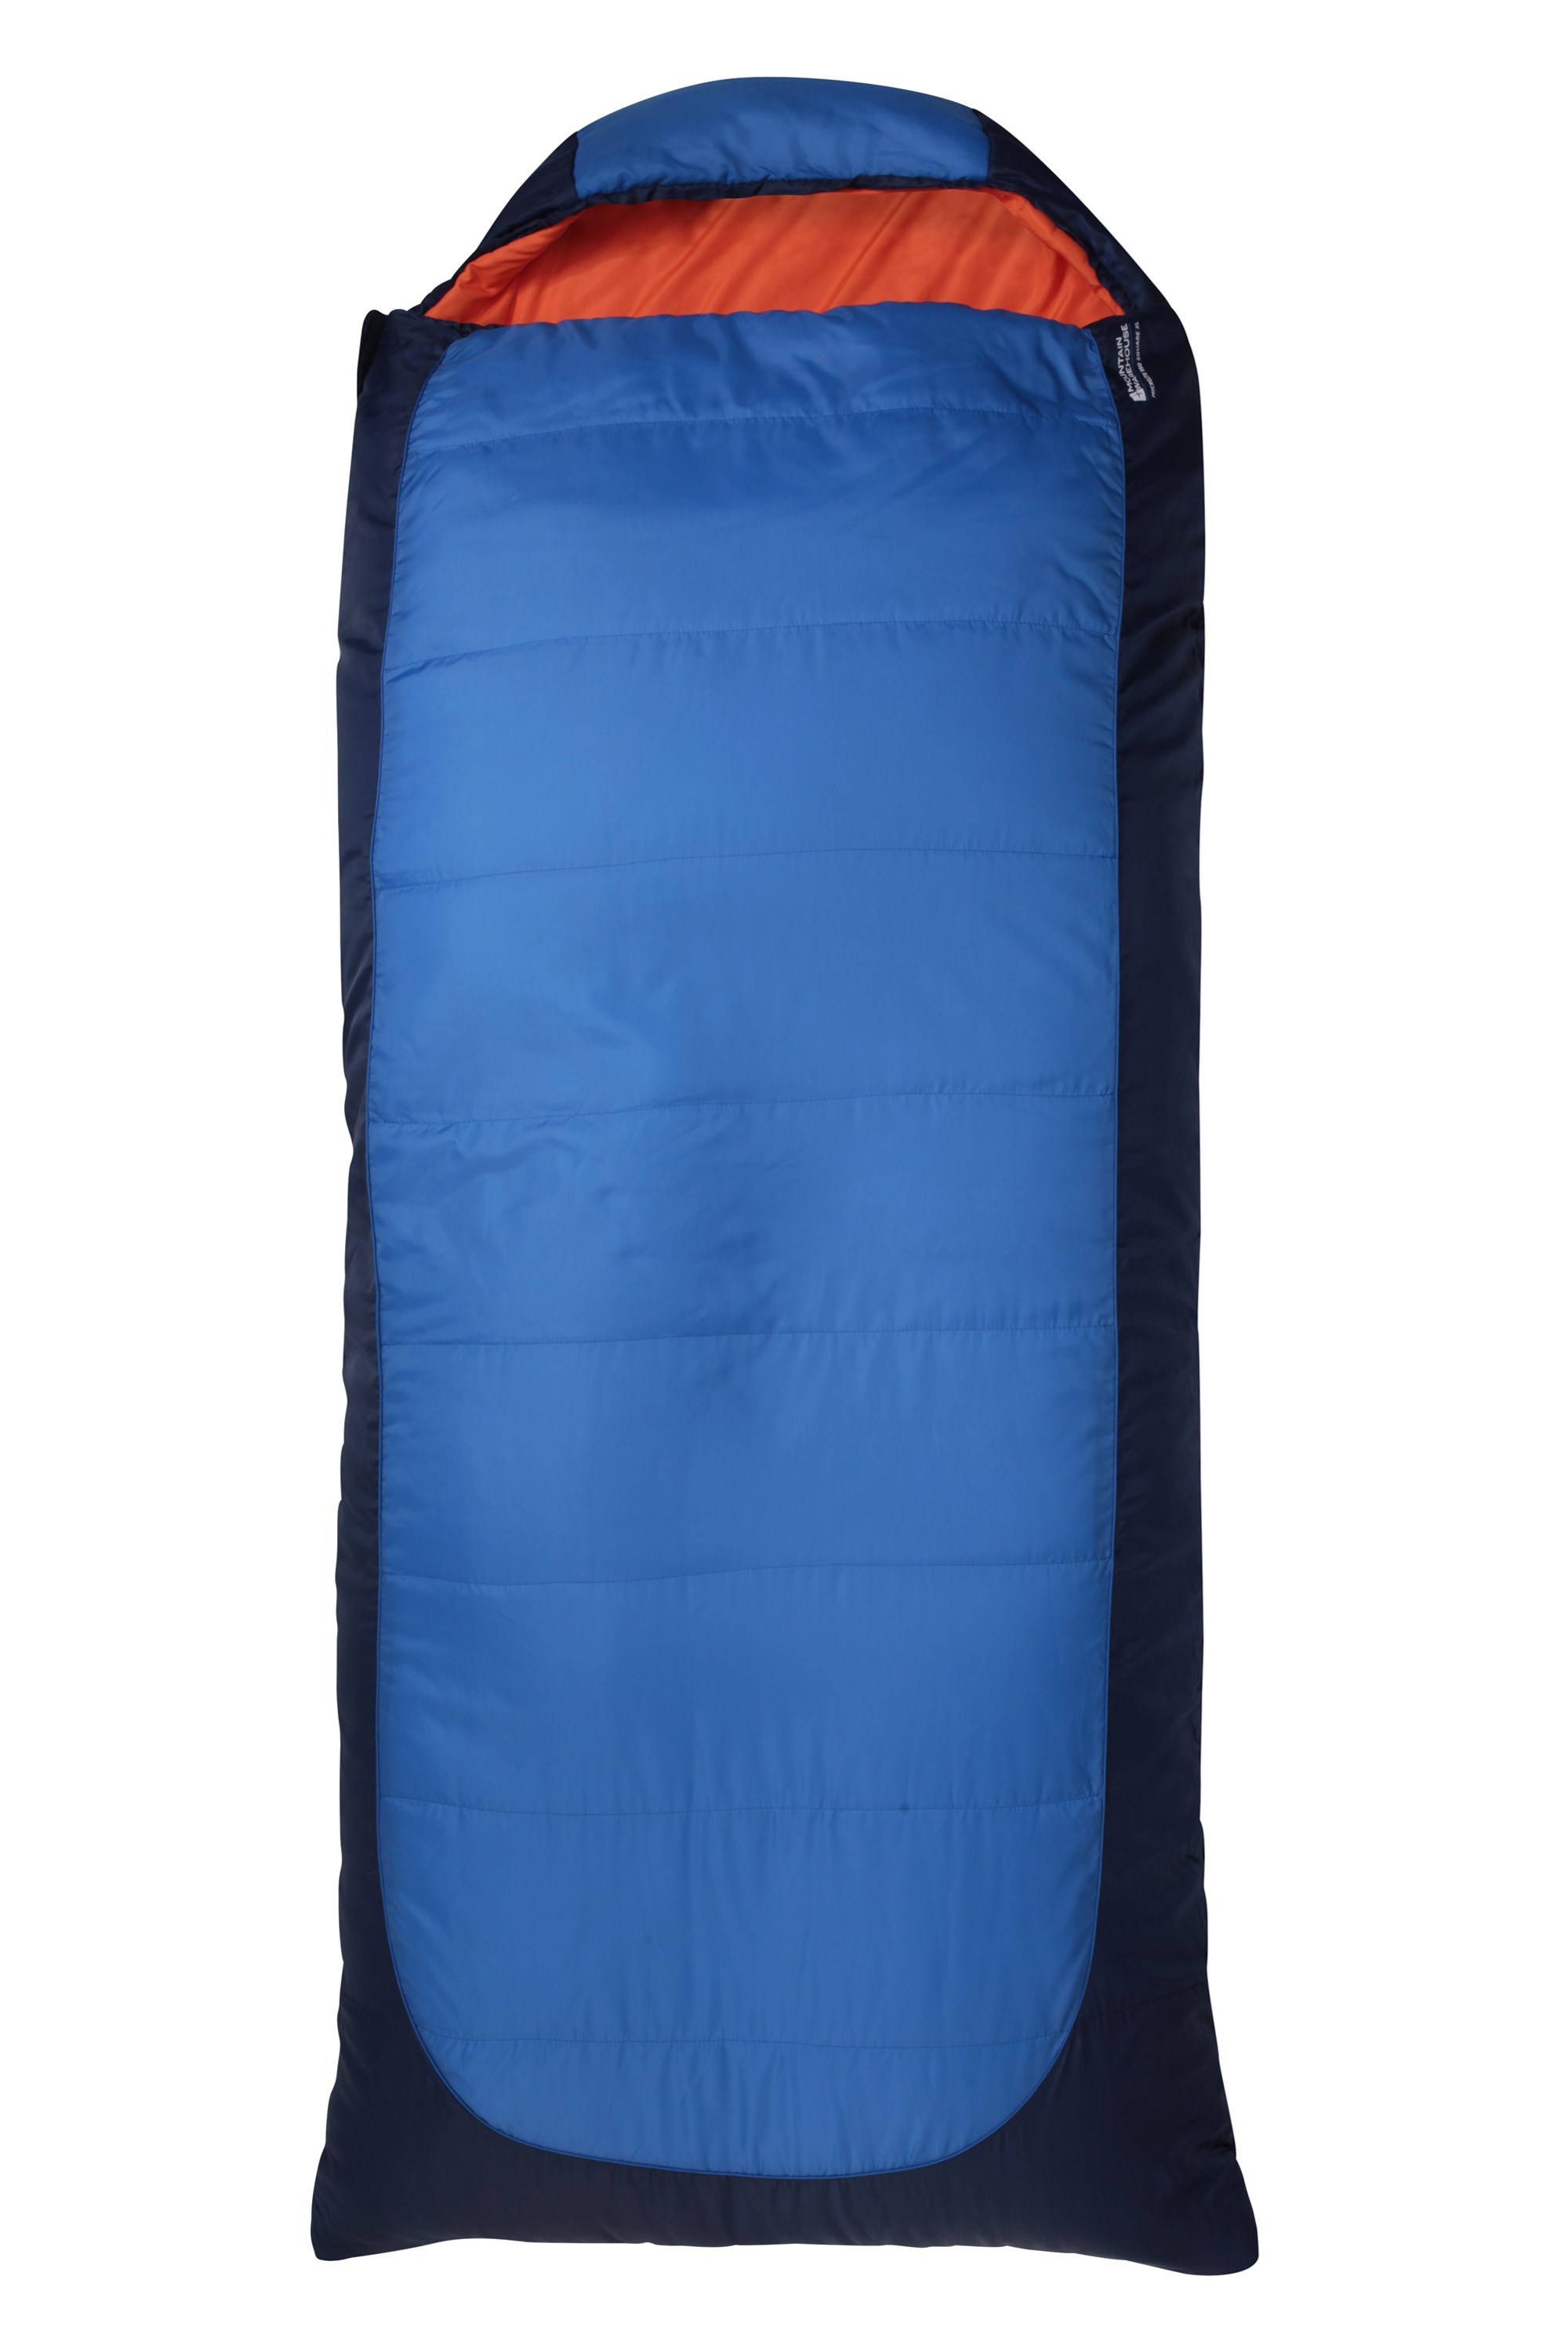 Microlite 950 Square Sleeping Bag - XL - Blue